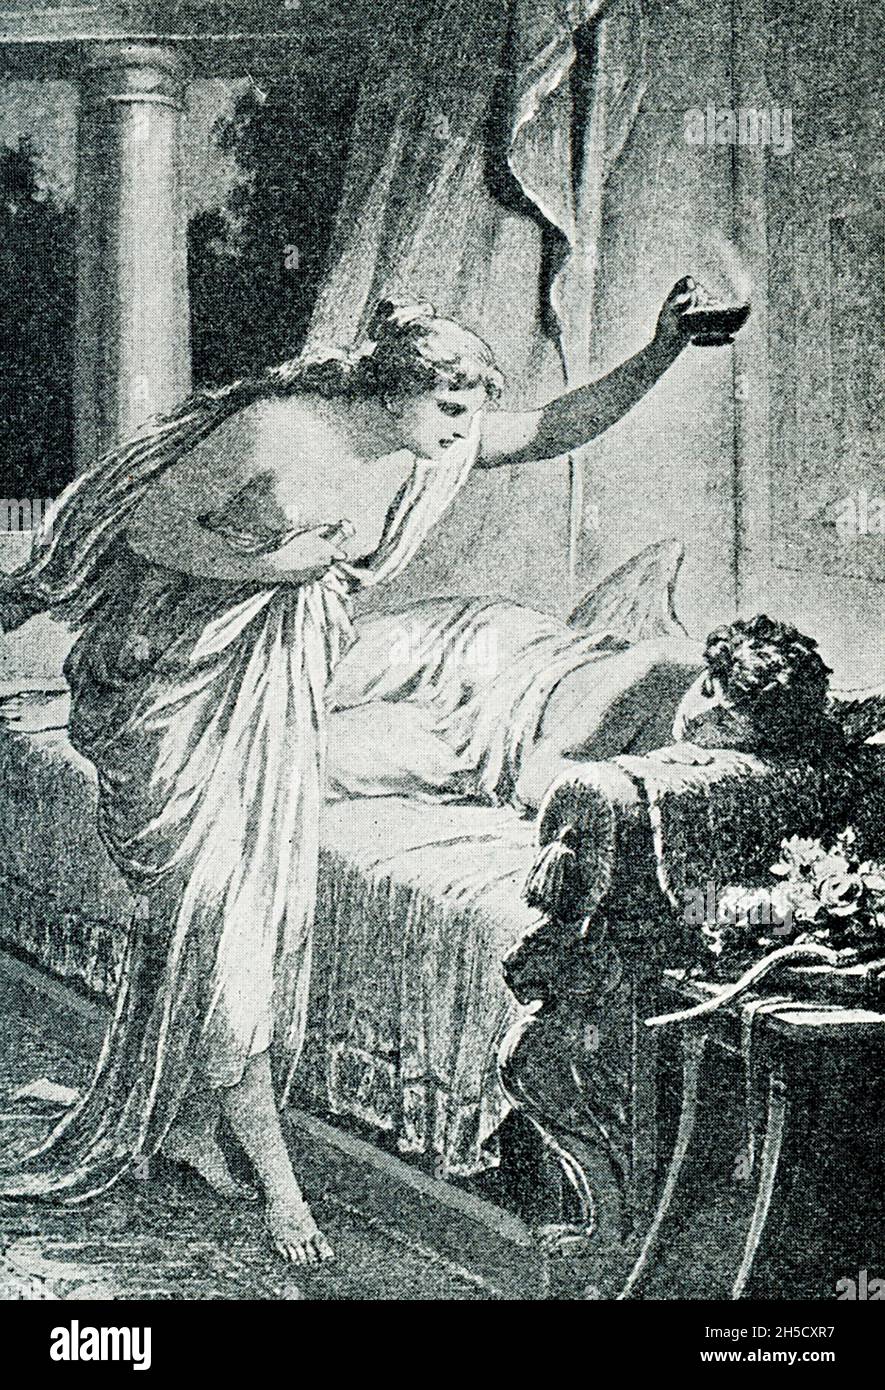 Según la mitología griega y romana, Cupido (Eros a los griegos) era el dios del amor. Su madre, Venus (Afrodita), estaba celosa de Psyche, una princesa mortal, y envió a Cupido a dispararla con una flecha de amor que la haría enamorarse de una criatura horrible. Por accidente, Cupido se engañó a sí mismo como lo hizo y revirtió el efecto en Psyche. Venus intentó sin éxito mantener los dos separados. Finalmente, Cupido y Pysche fueron autorizados a casarse, y a Psyche se le concedió inmortalidad. Aquí Pysche mira a Cuopid dormido – mito dice que una gota de la cera caliente de la vela cayó sobre Cupido, lo despertó, a. Foto de stock